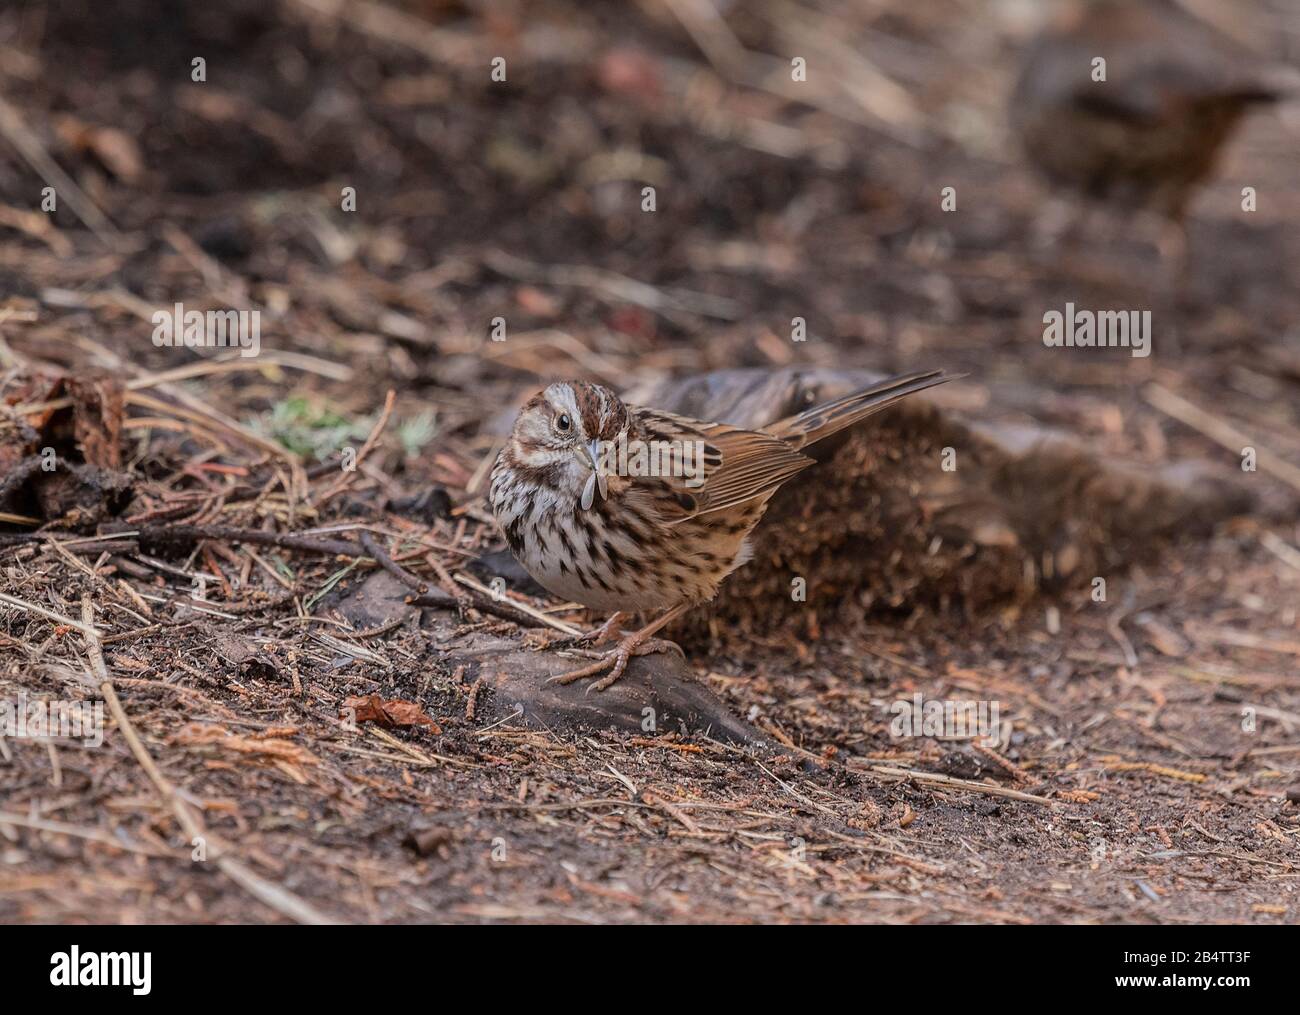 El gorrión de Lincoln, Melospiza lincolnii, alimentándose de termitas aladas emergentes, Reticulitermes hesperus en el suelo del bosque, después de la lluvia. Foto de stock